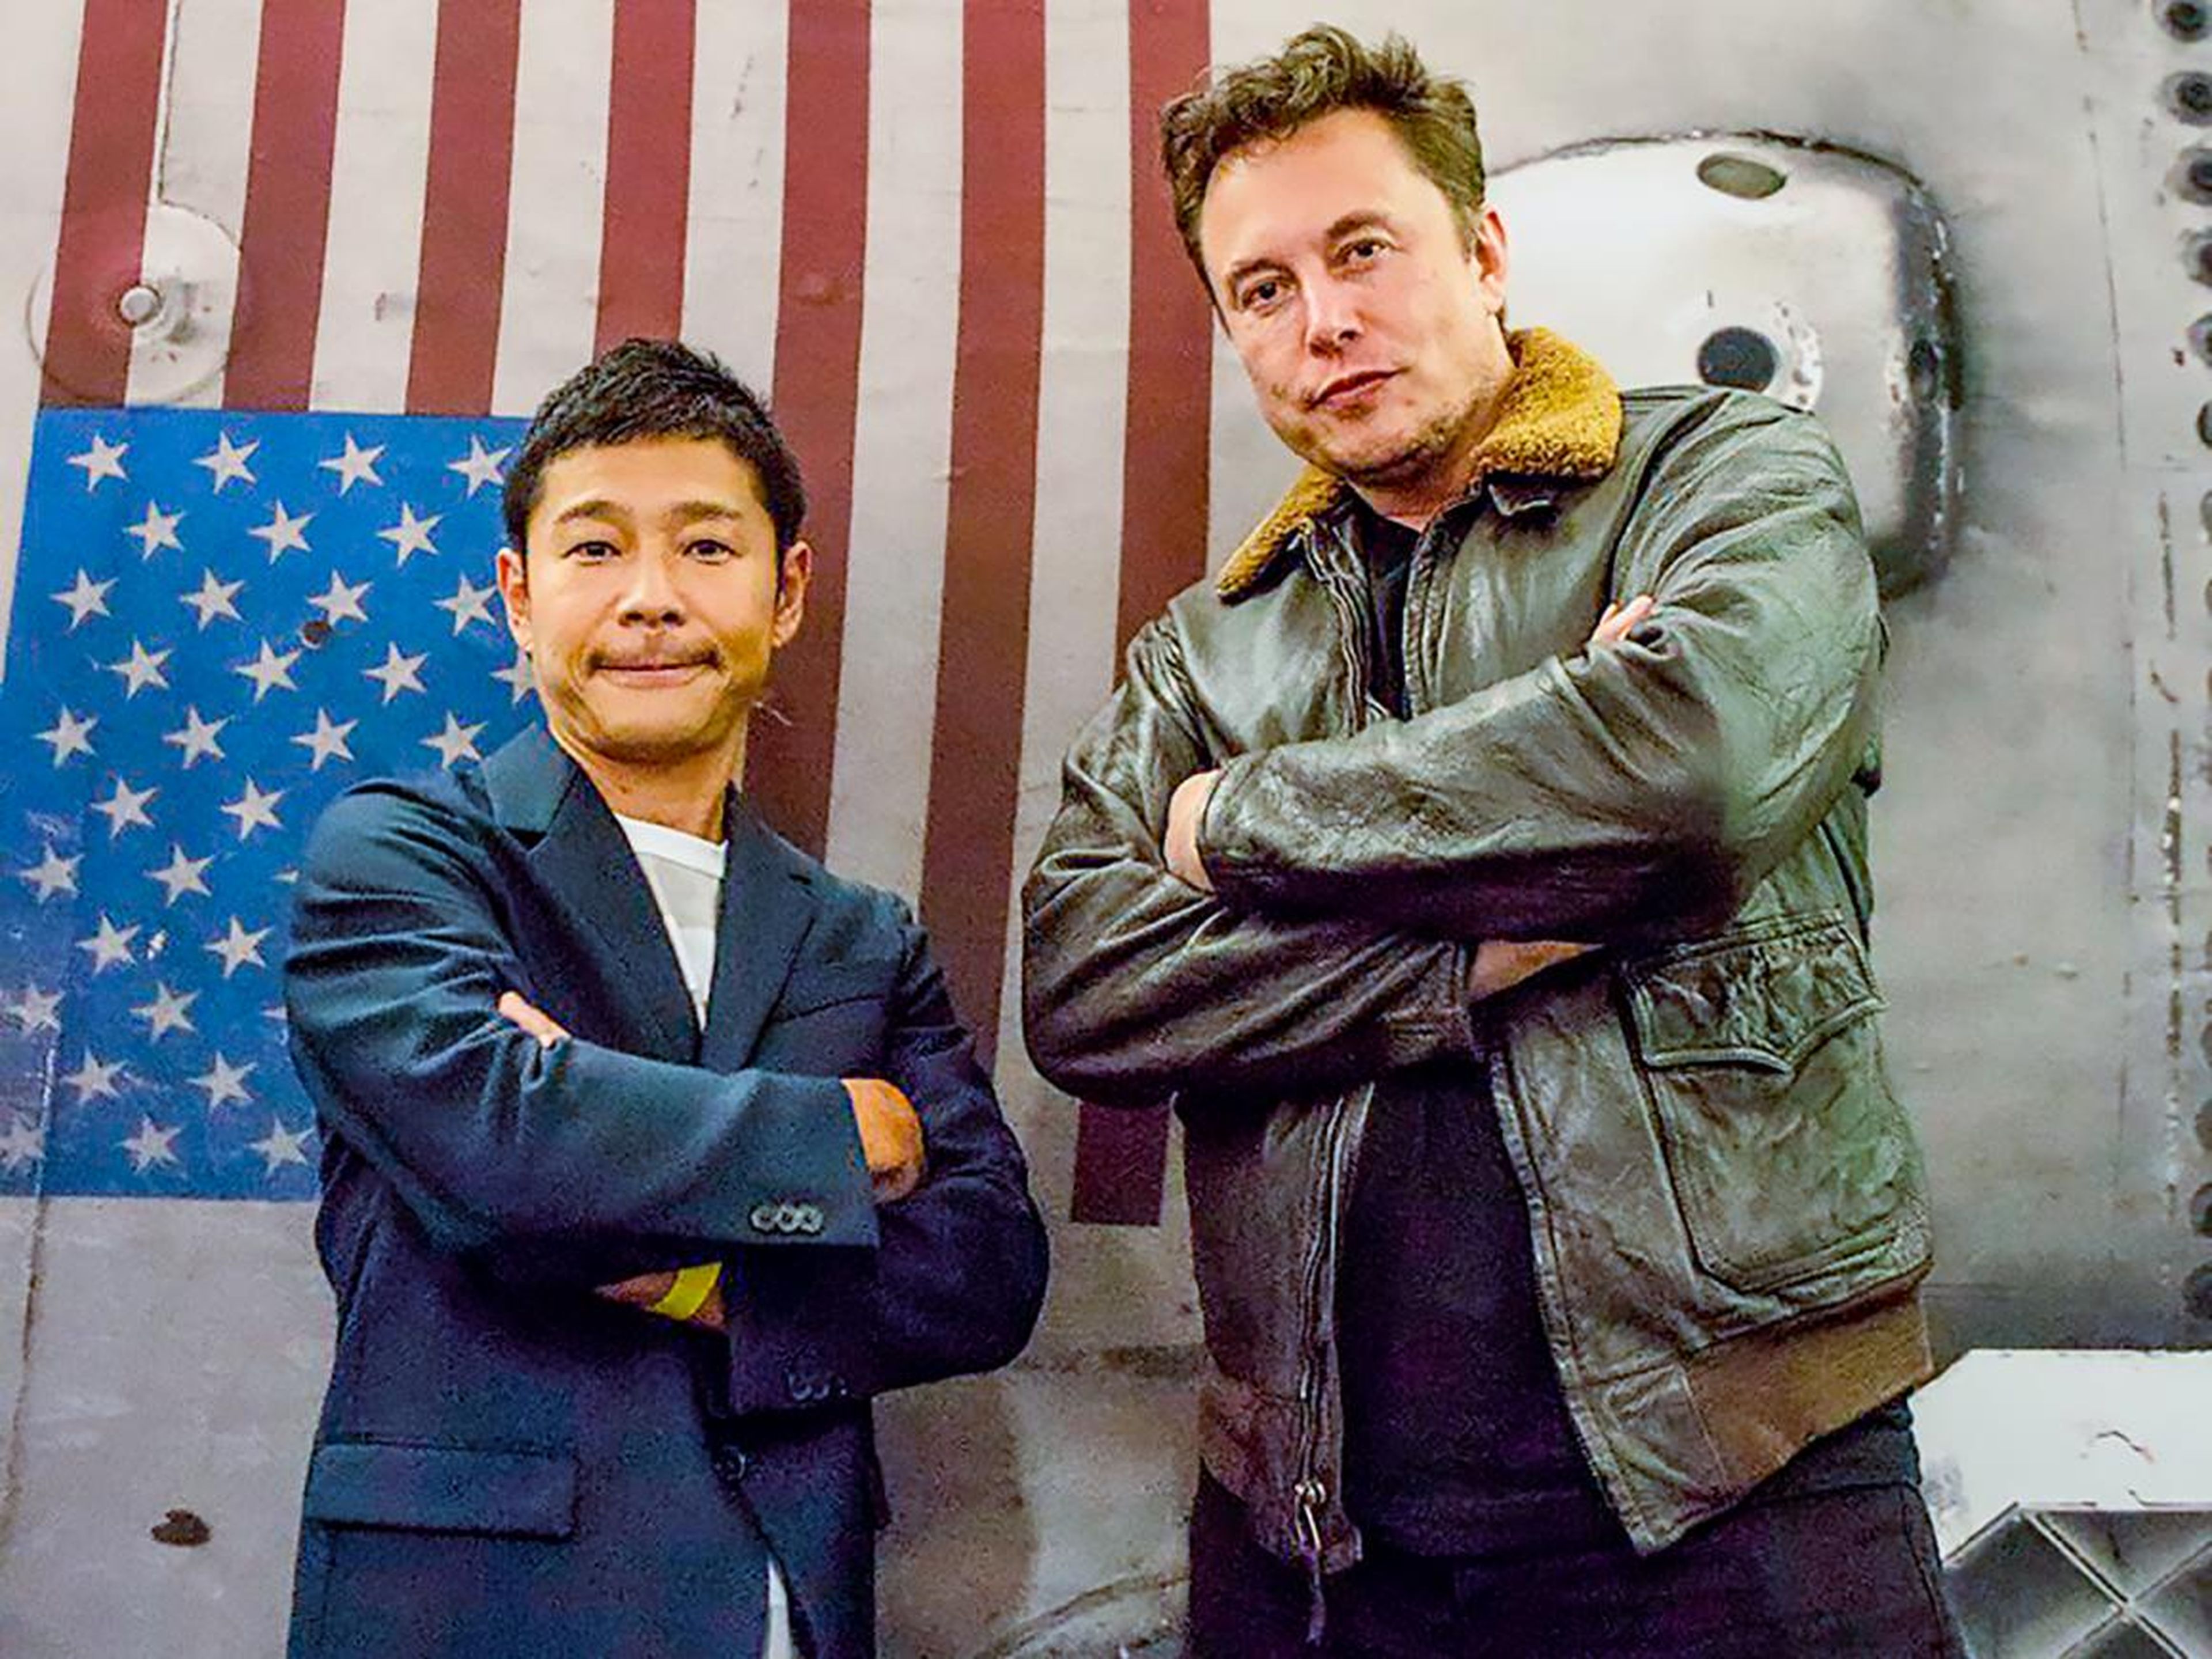 El multimillonario japonés y magnate de la moda Yusaku Maezawa posa con Elon Musk, CEO de SpaceX, frente a una impresión de un cohete Falcon 9 el 18 de septiembre de 2018.